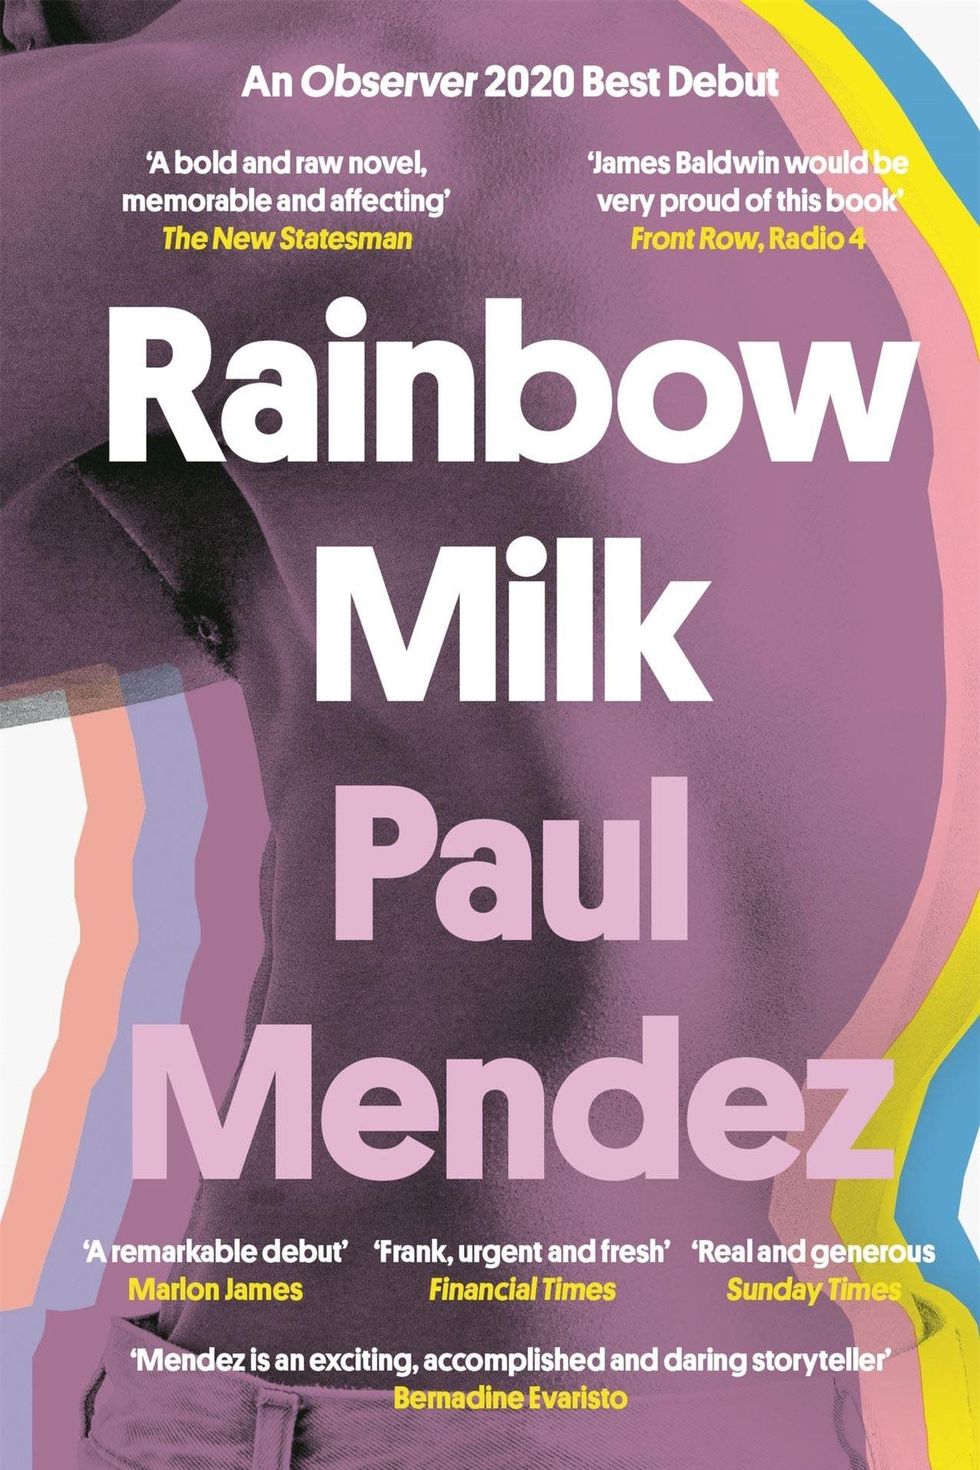 Rainbow Milk, de Paul Mendez